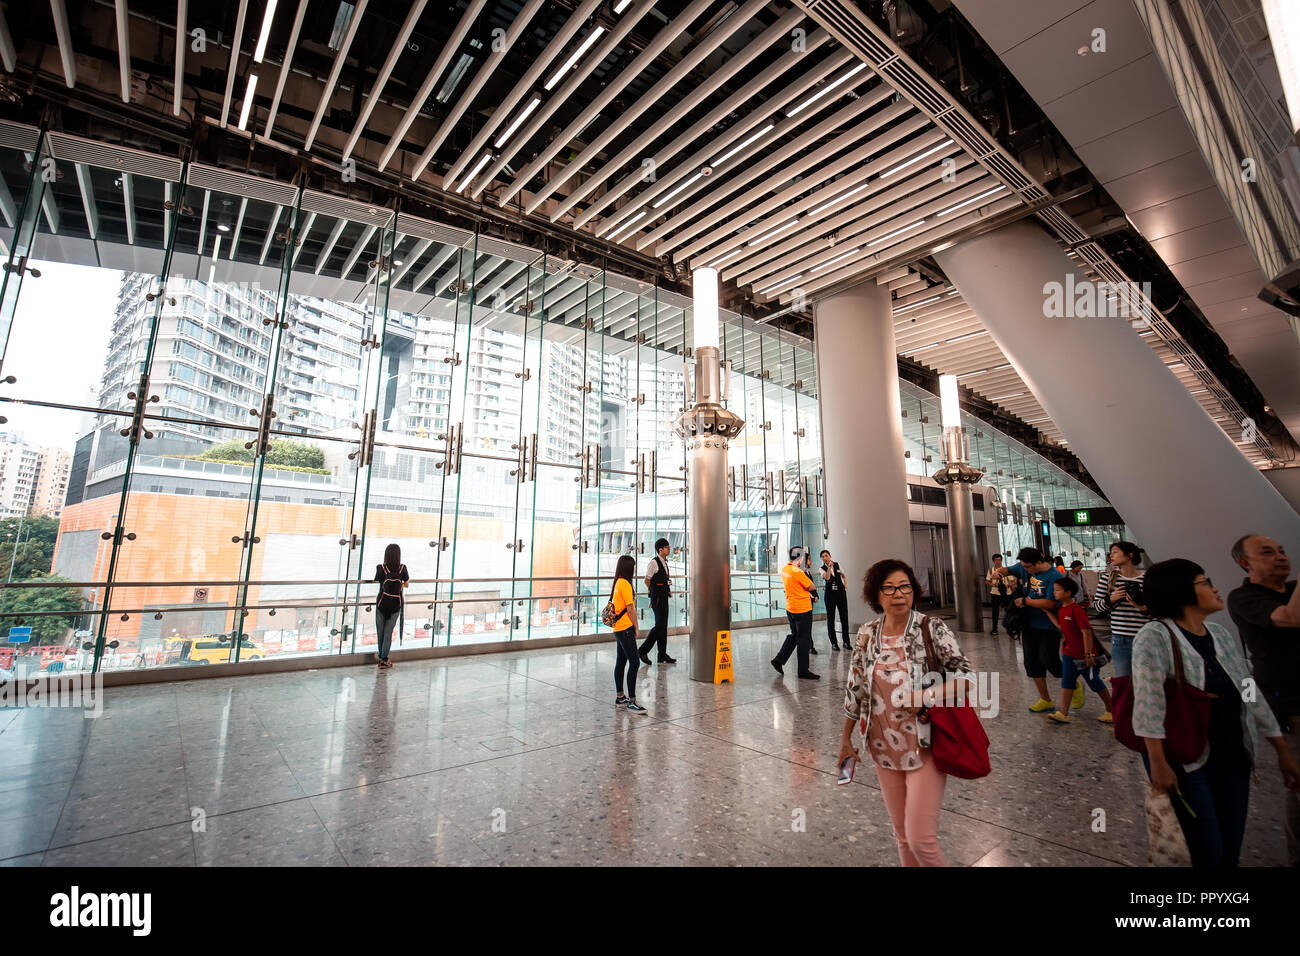 Hong Kong, Chine - Septembre 02, 2018 : hall de départ de Hong Kong à l'Ouest gare de Kowloon. C'est le terminus de la section de Hong Kong de la G Banque D'Images